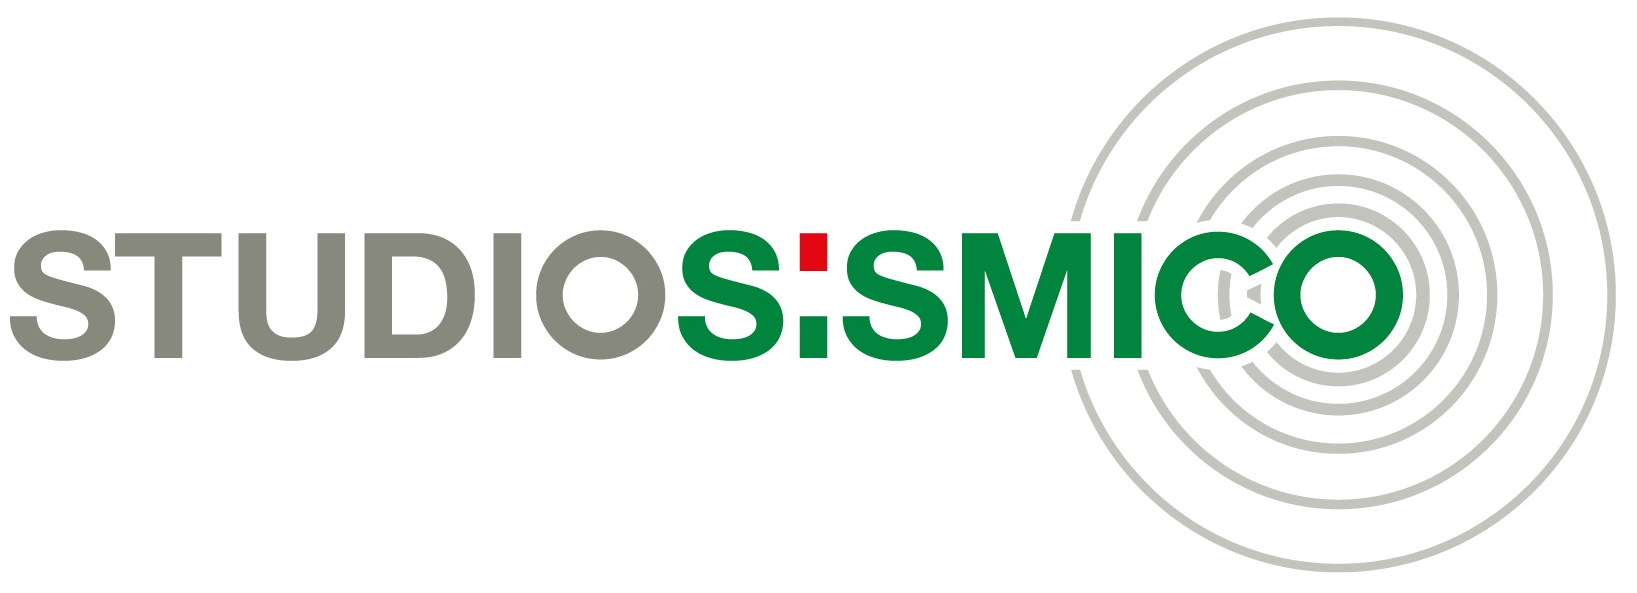 Logo_Studio_Sismico1.jpg